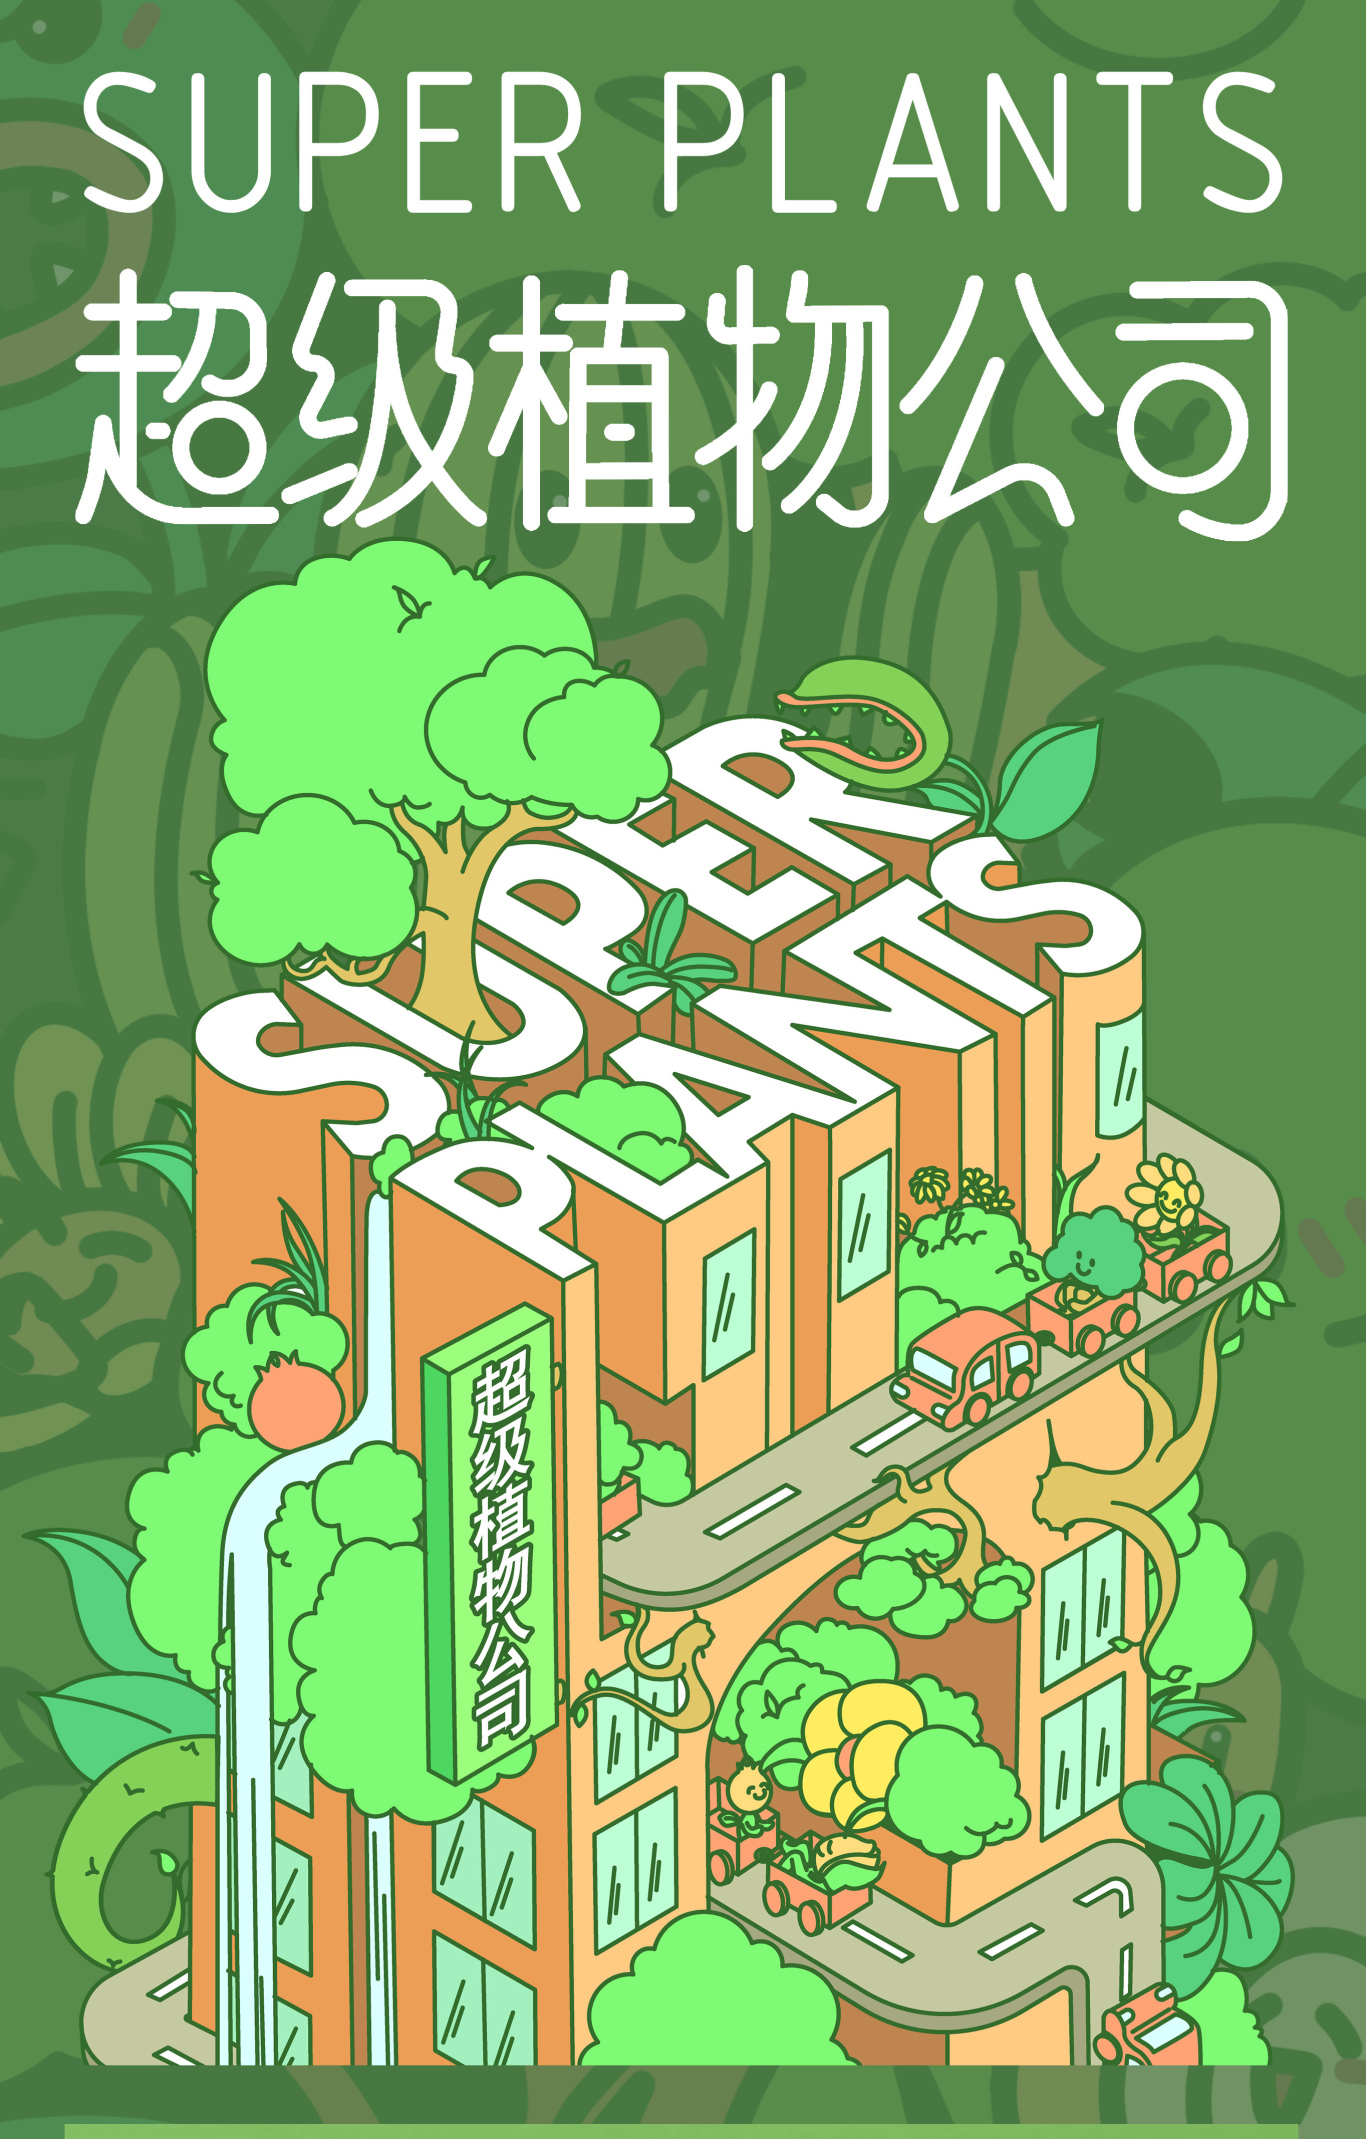 超级植物主题海报插画设计图0